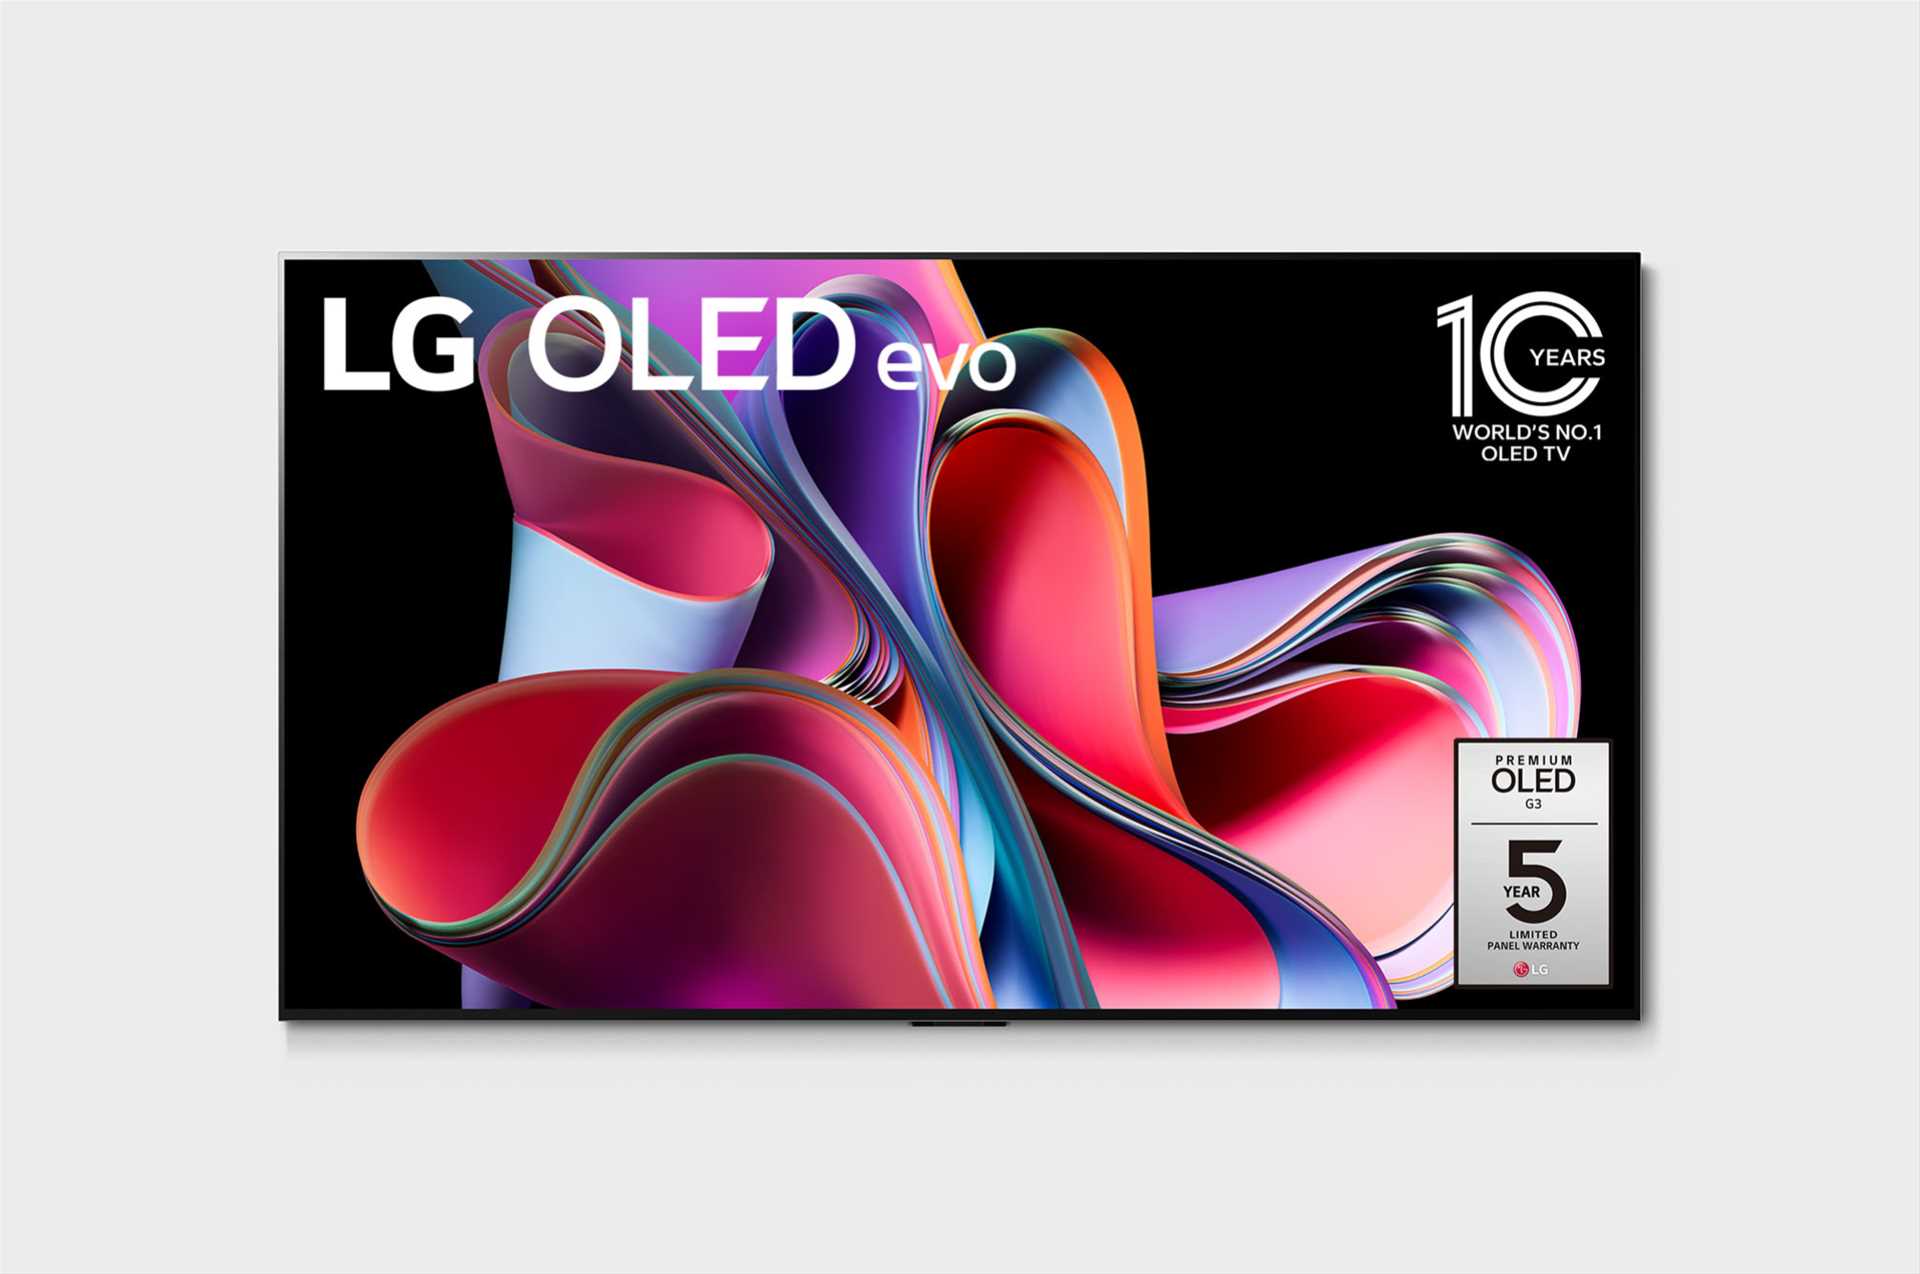 מסך טלוויזיה בטכנולוגיית LG OLED evo Gallery Edition - בגודל 83 אינץ' חכמה ברזולוציית 4K דגם: OLED83G36LA - תמונה 1